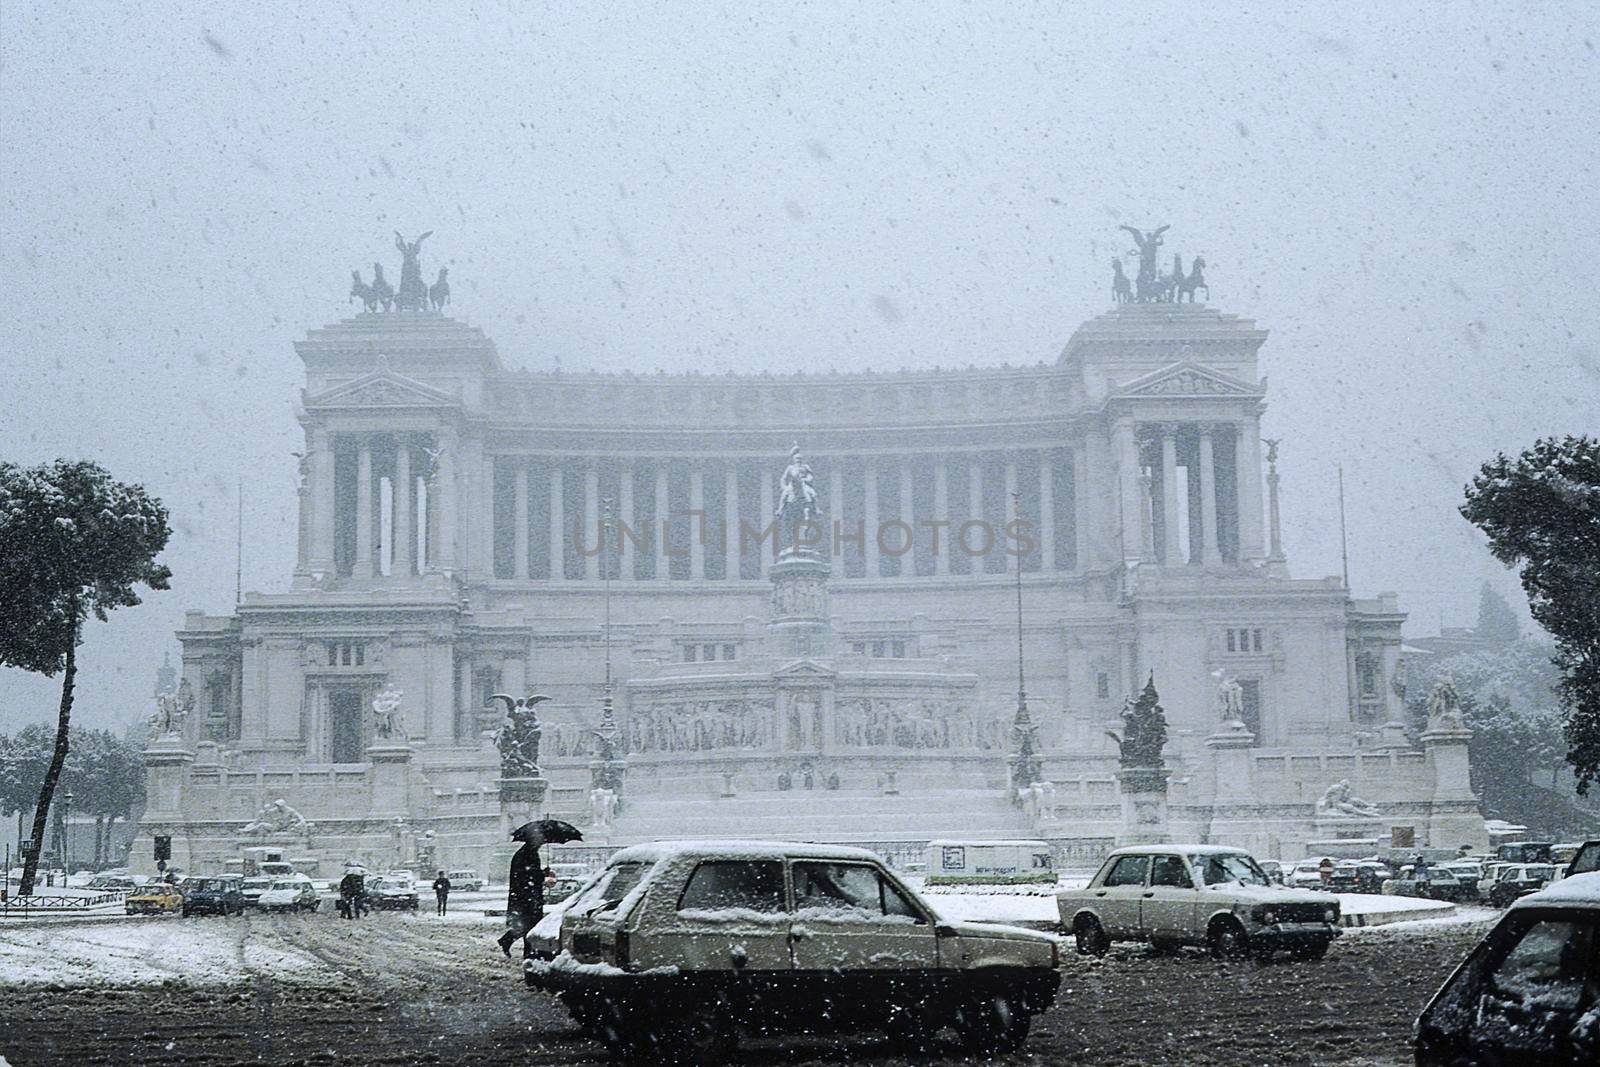 unusual snowfall in Rome - Venice square - Rome - Lazio - Italy